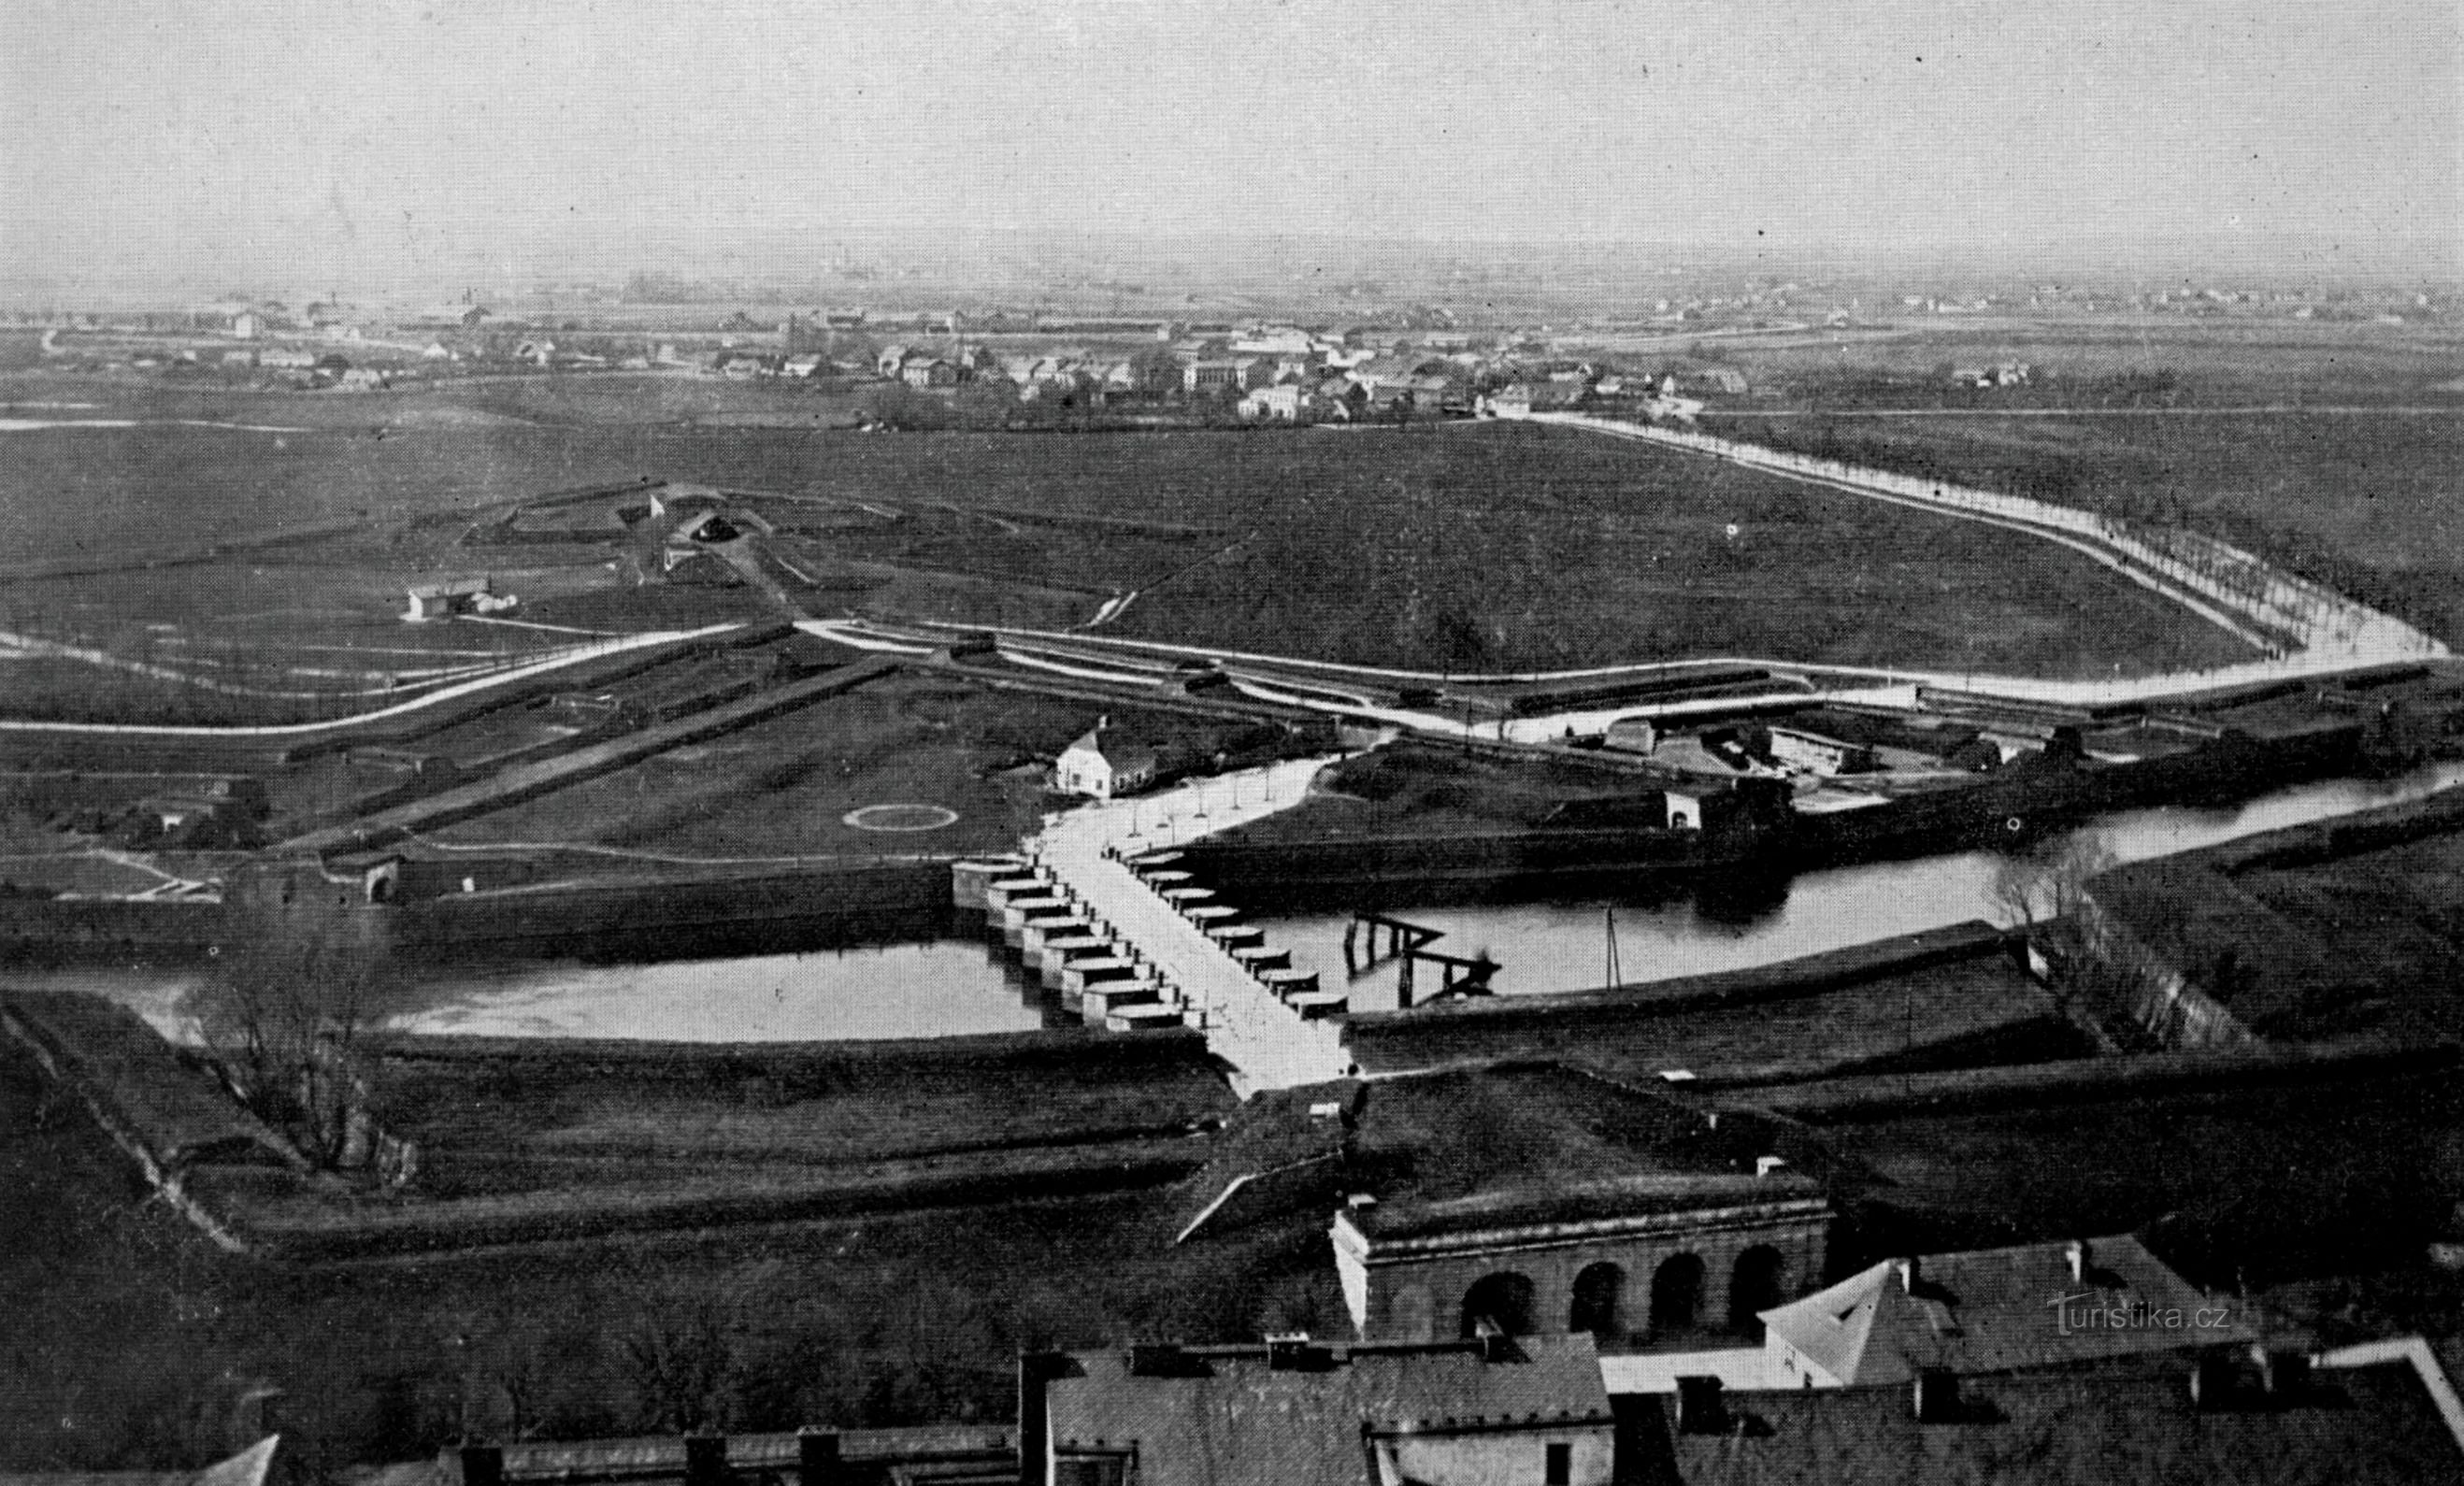 Uitzicht vanaf de Witte Toren naar de Praagse Brug (Hradec Králové, 1886)